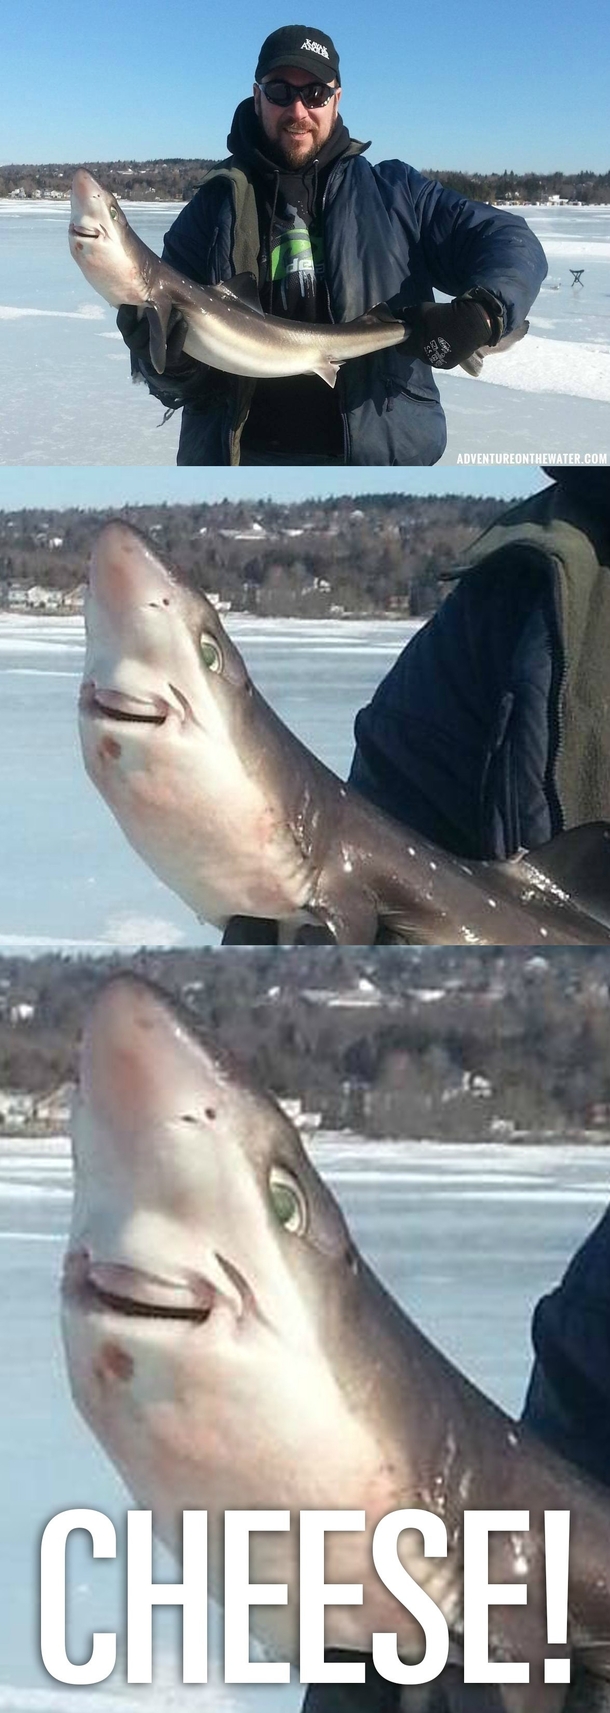 Shark loves being caught